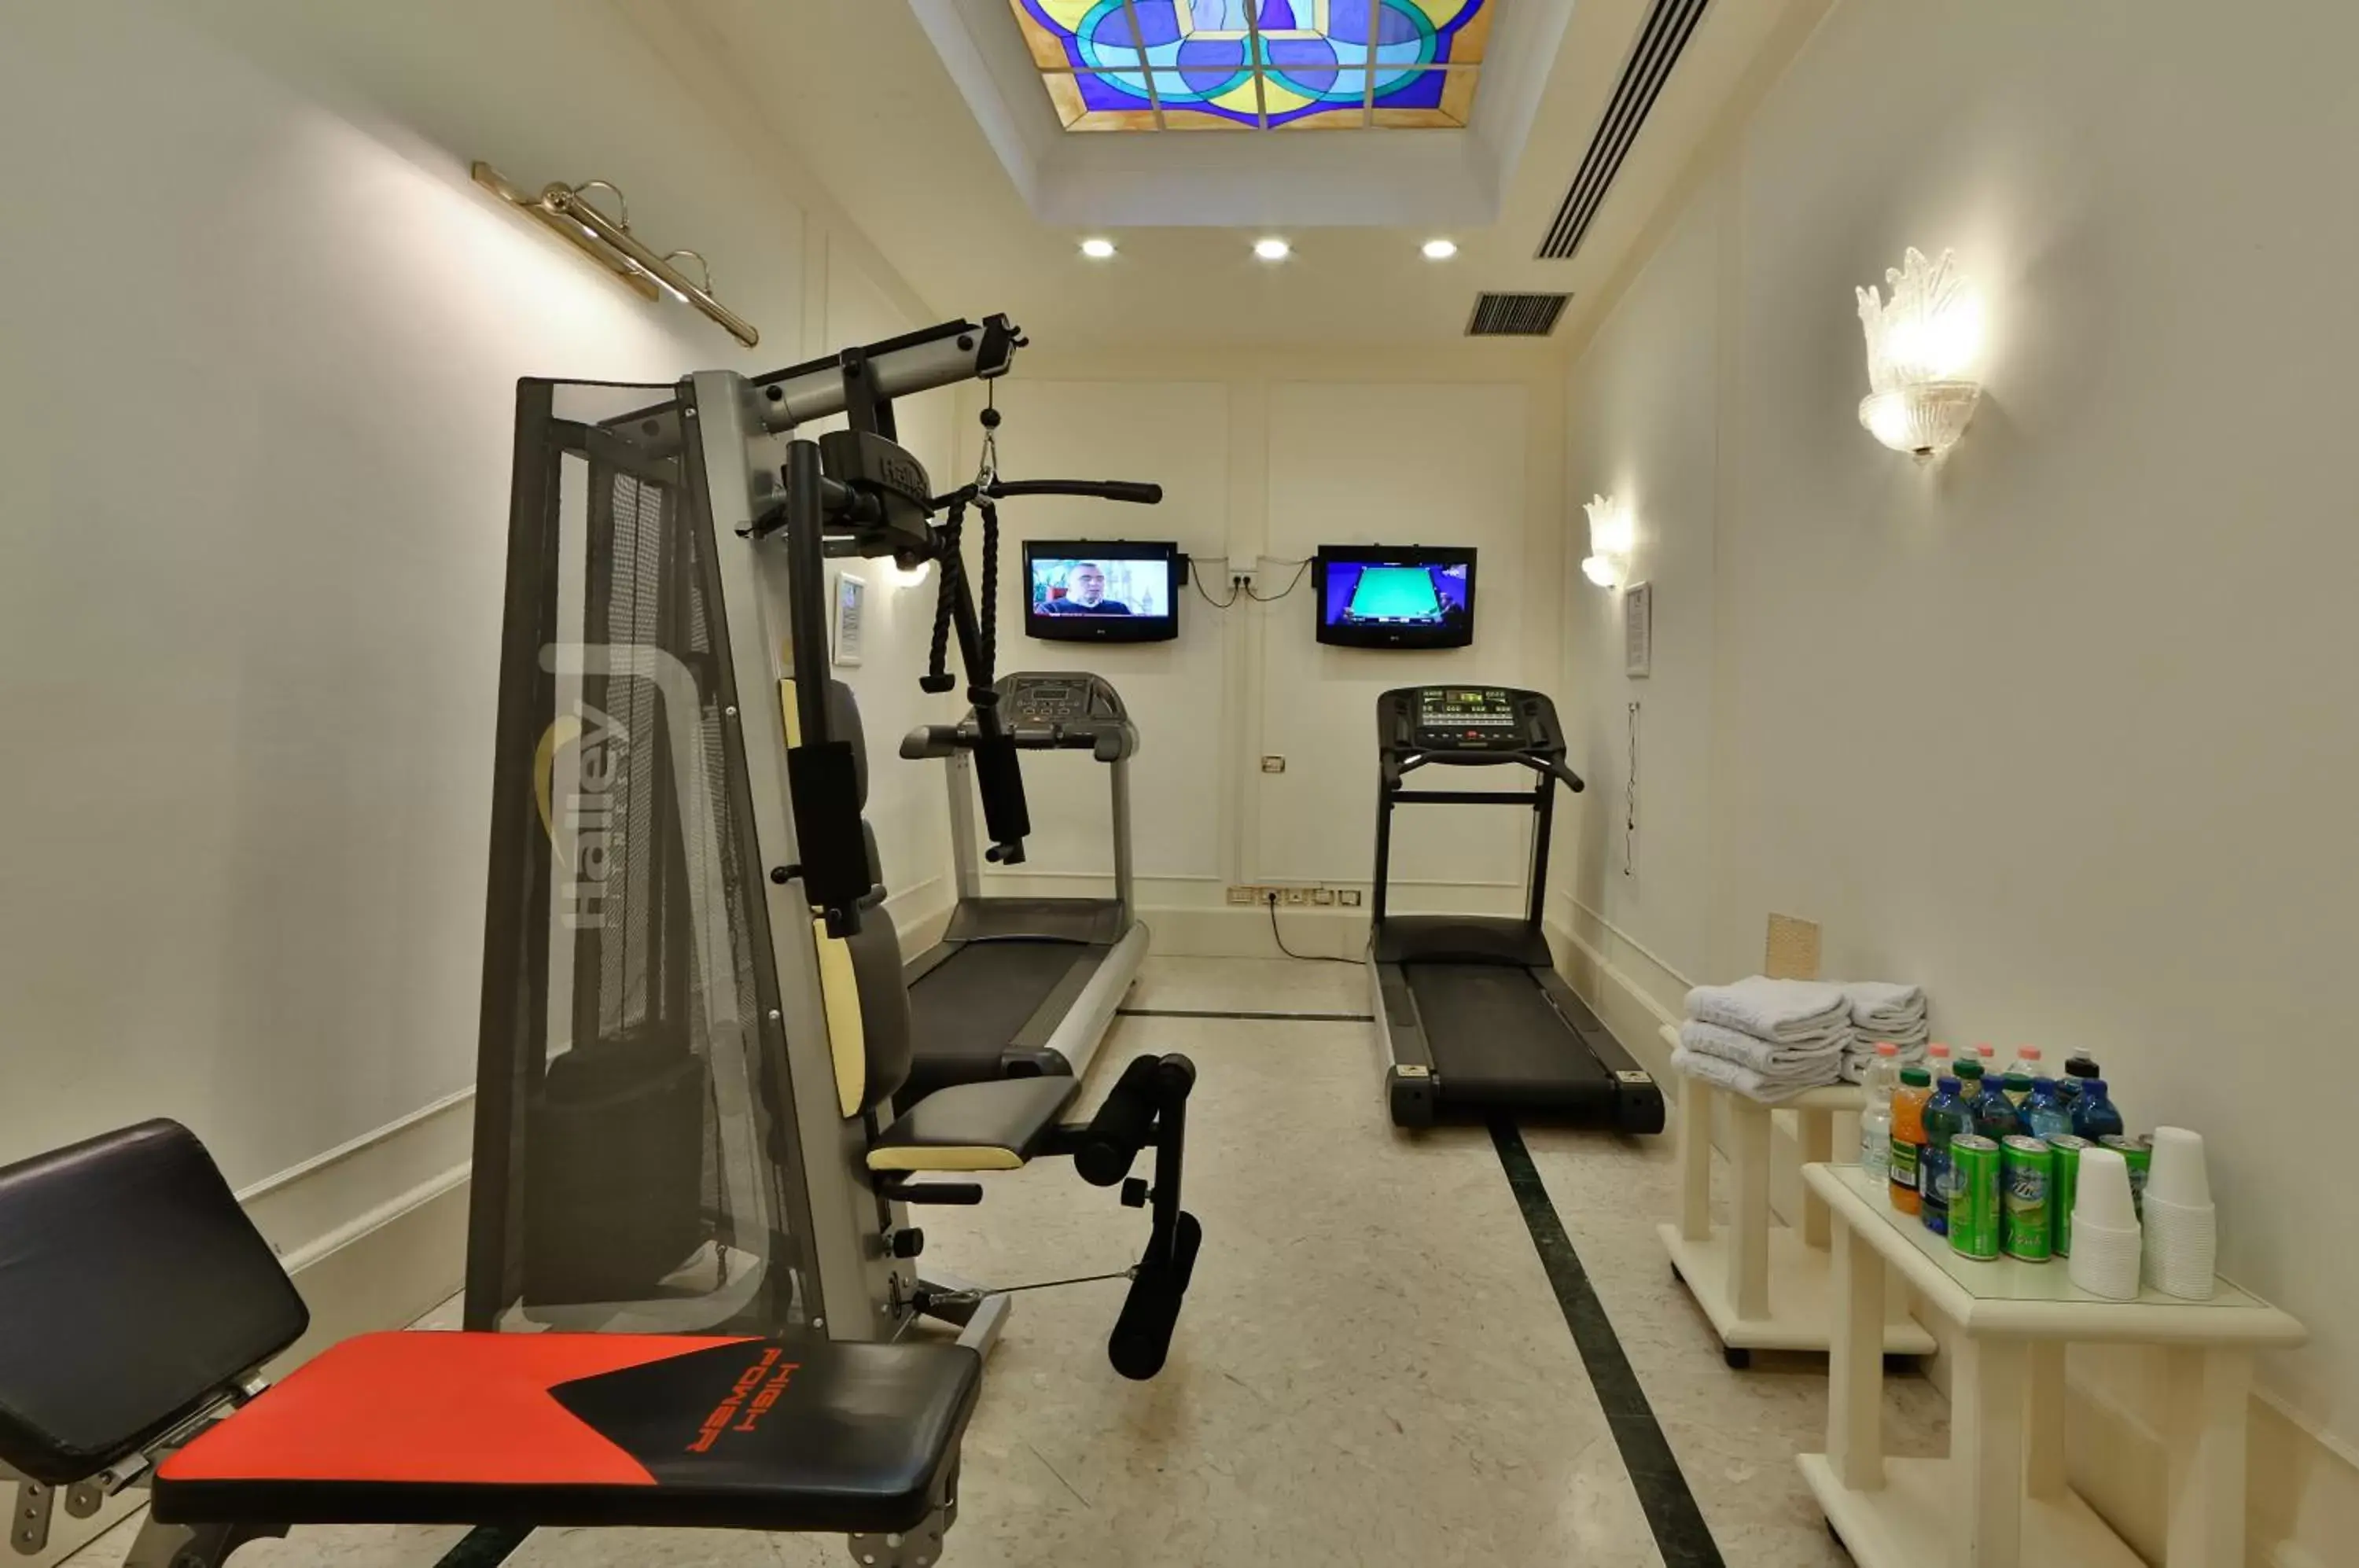 Fitness centre/facilities, Fitness Center/Facilities in Grand Hotel Adriatico